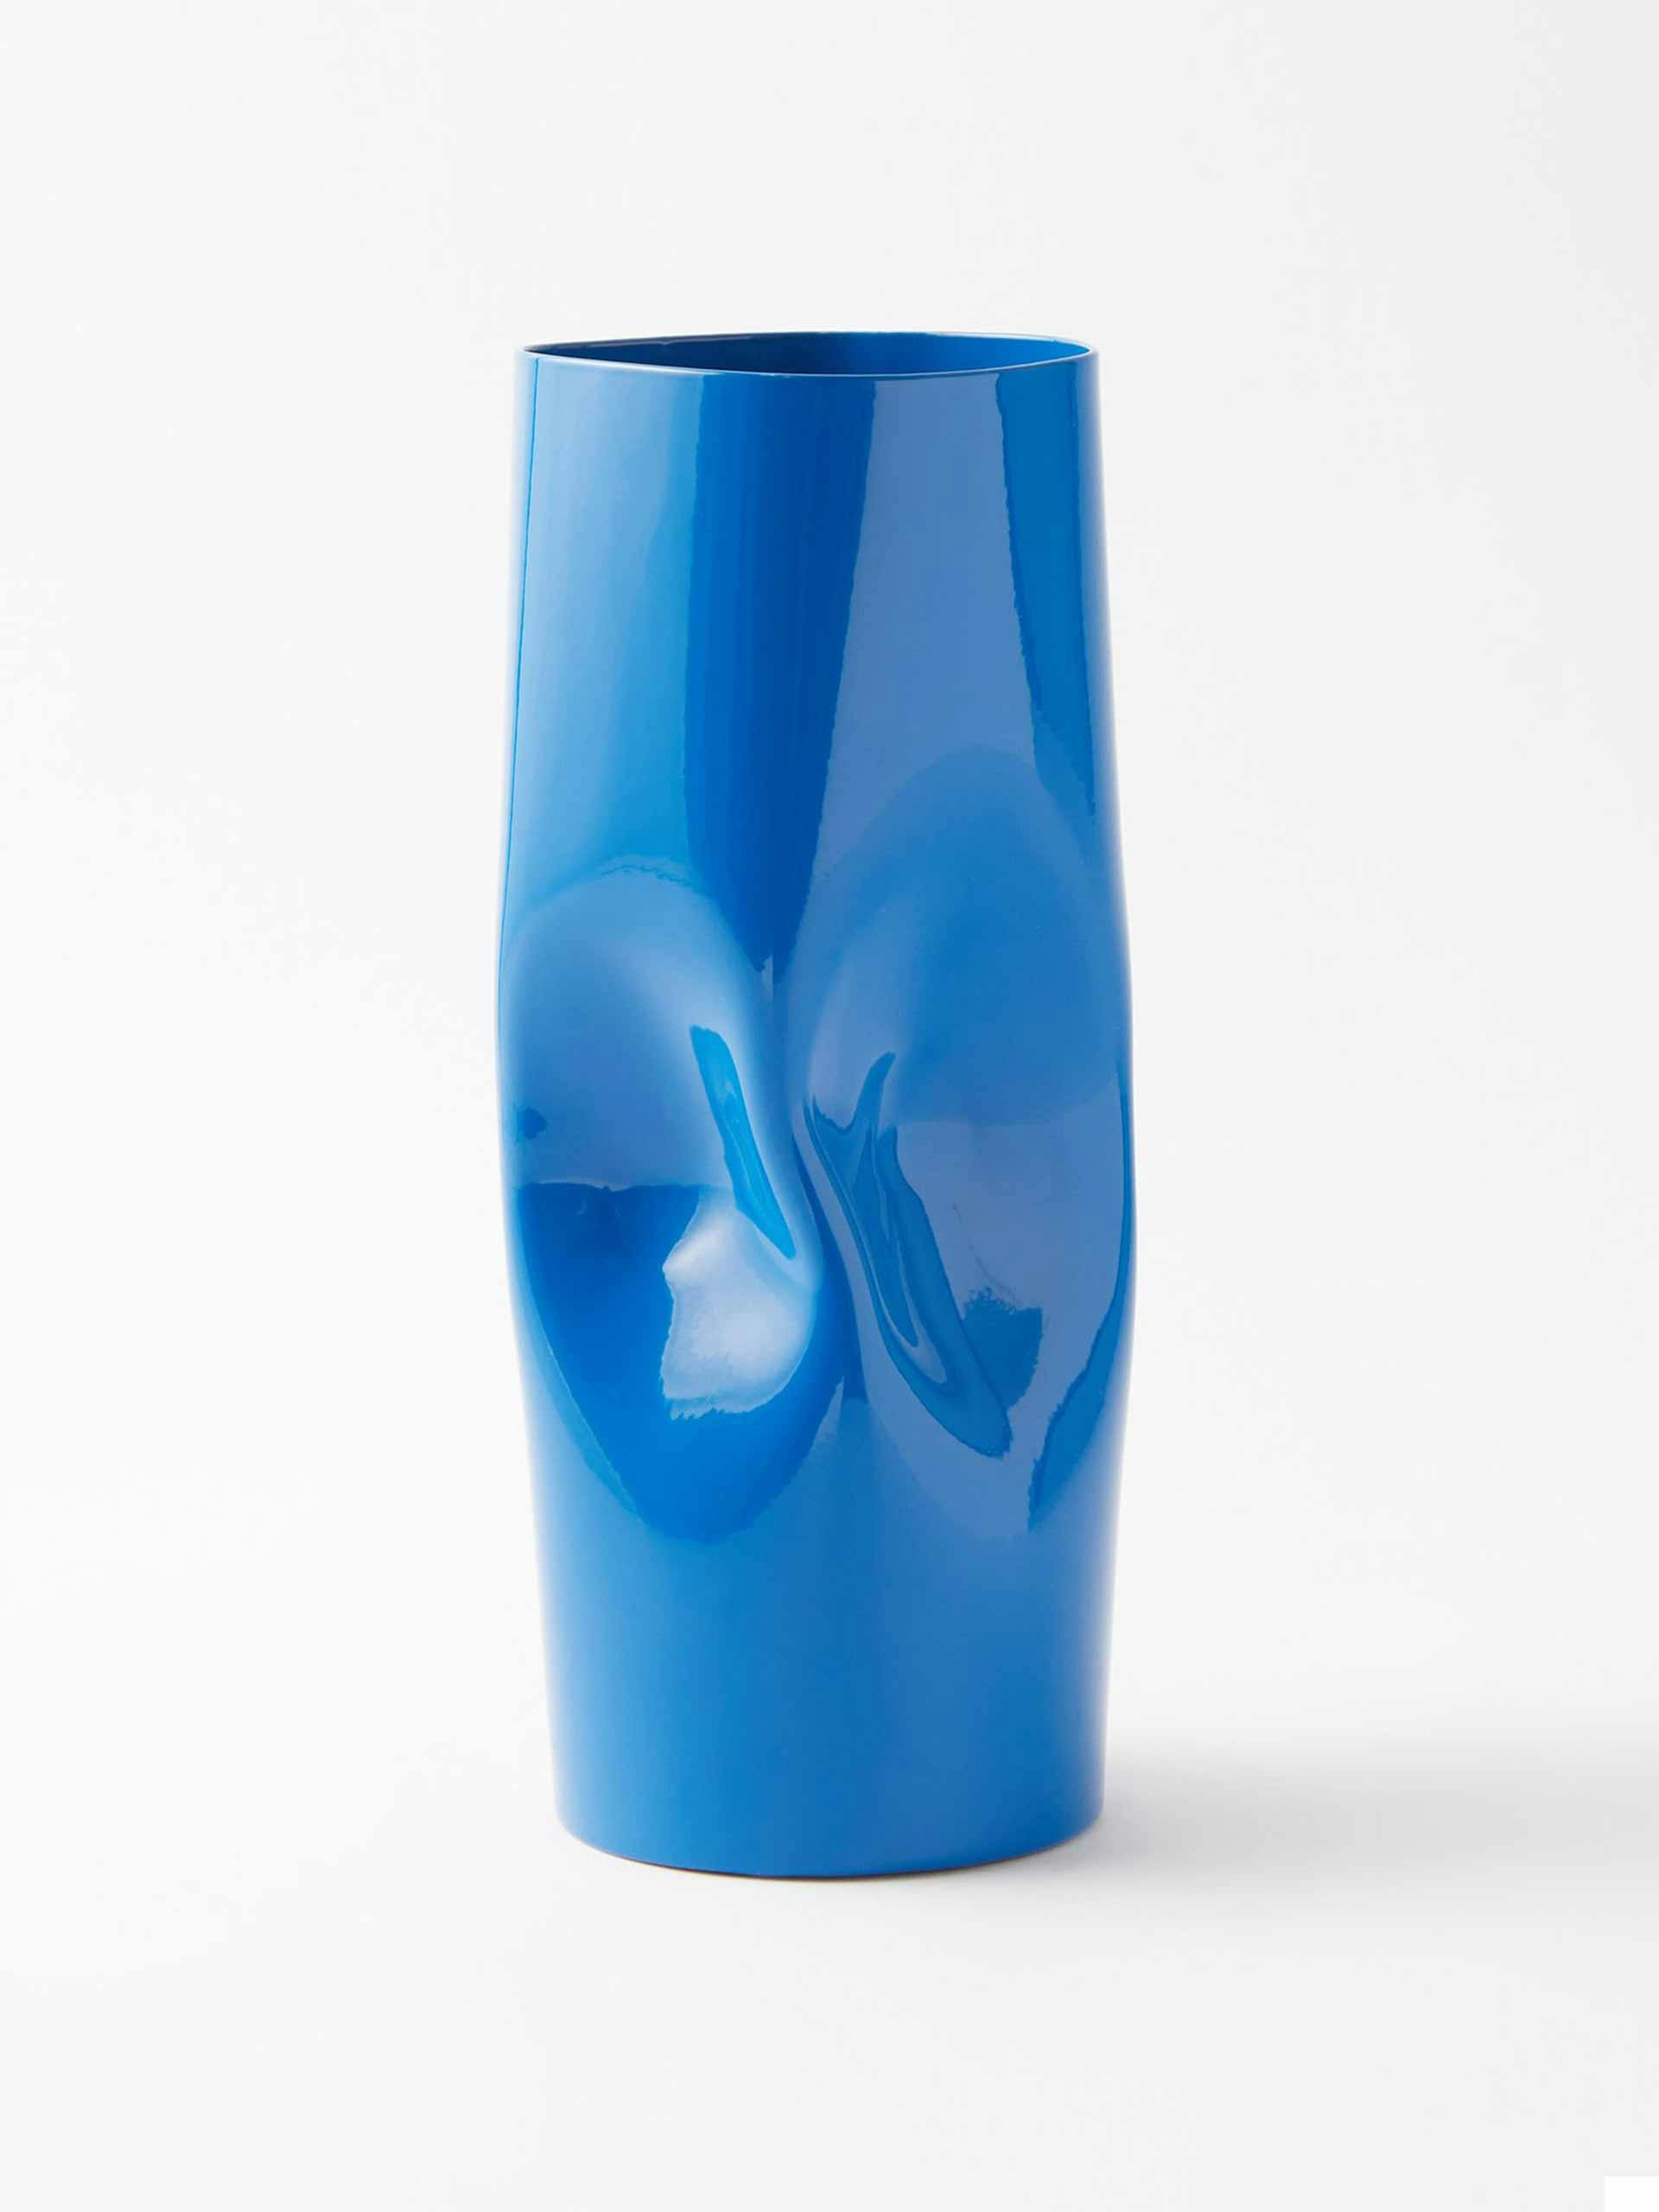 Cobalt blue medium twisted stainless-steel vase